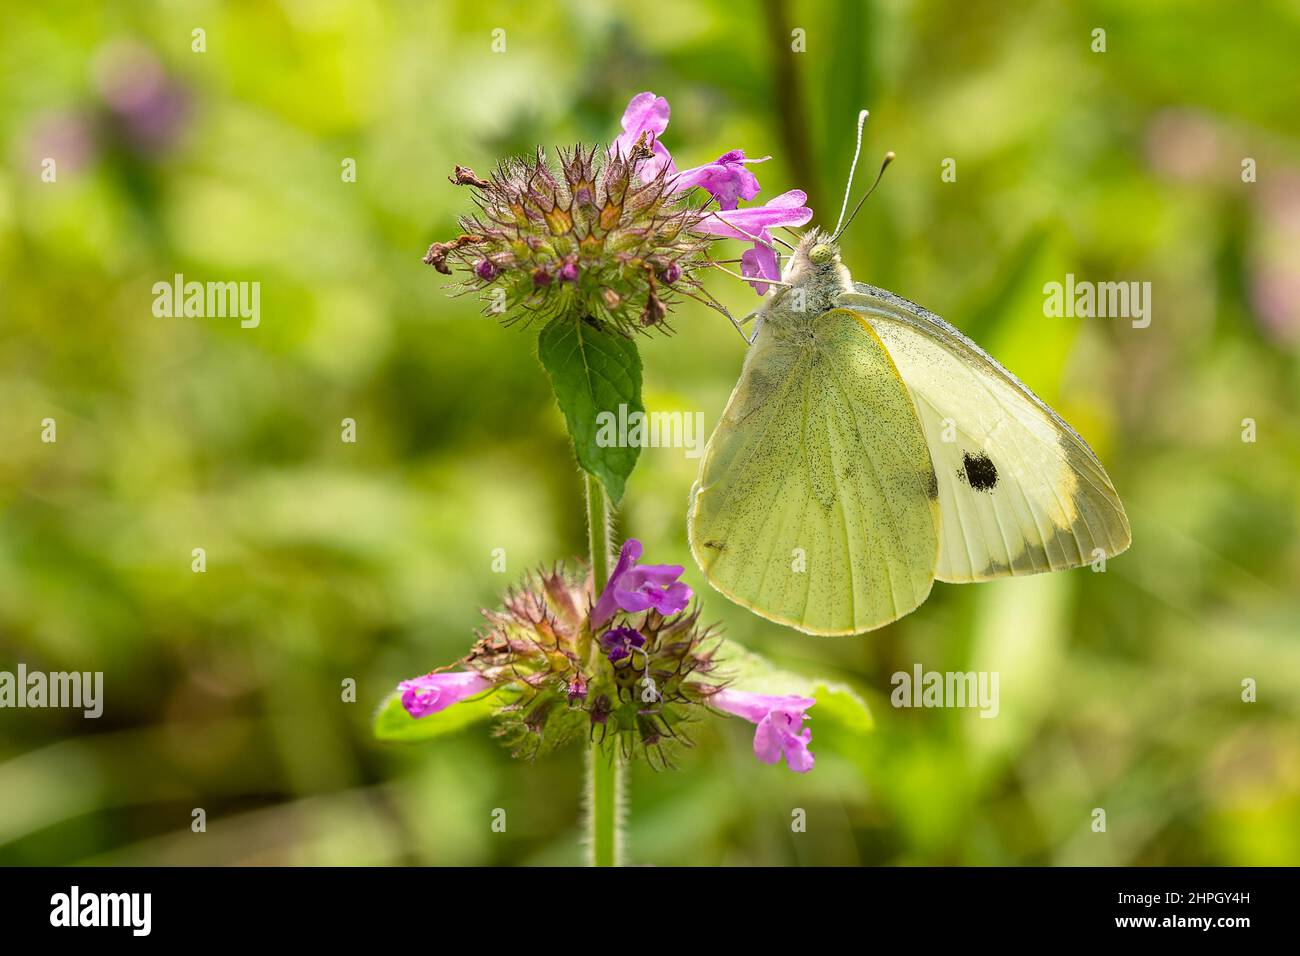 Weißer und gelber Kohlschmetterling mit schwarzem Punkt, sitzend auf einer winzigen violetten Blume, die auf einer Wiese wächst, die Nektar saugt. Sonniger Sommertag. Verschwommenes Grün Stockfoto